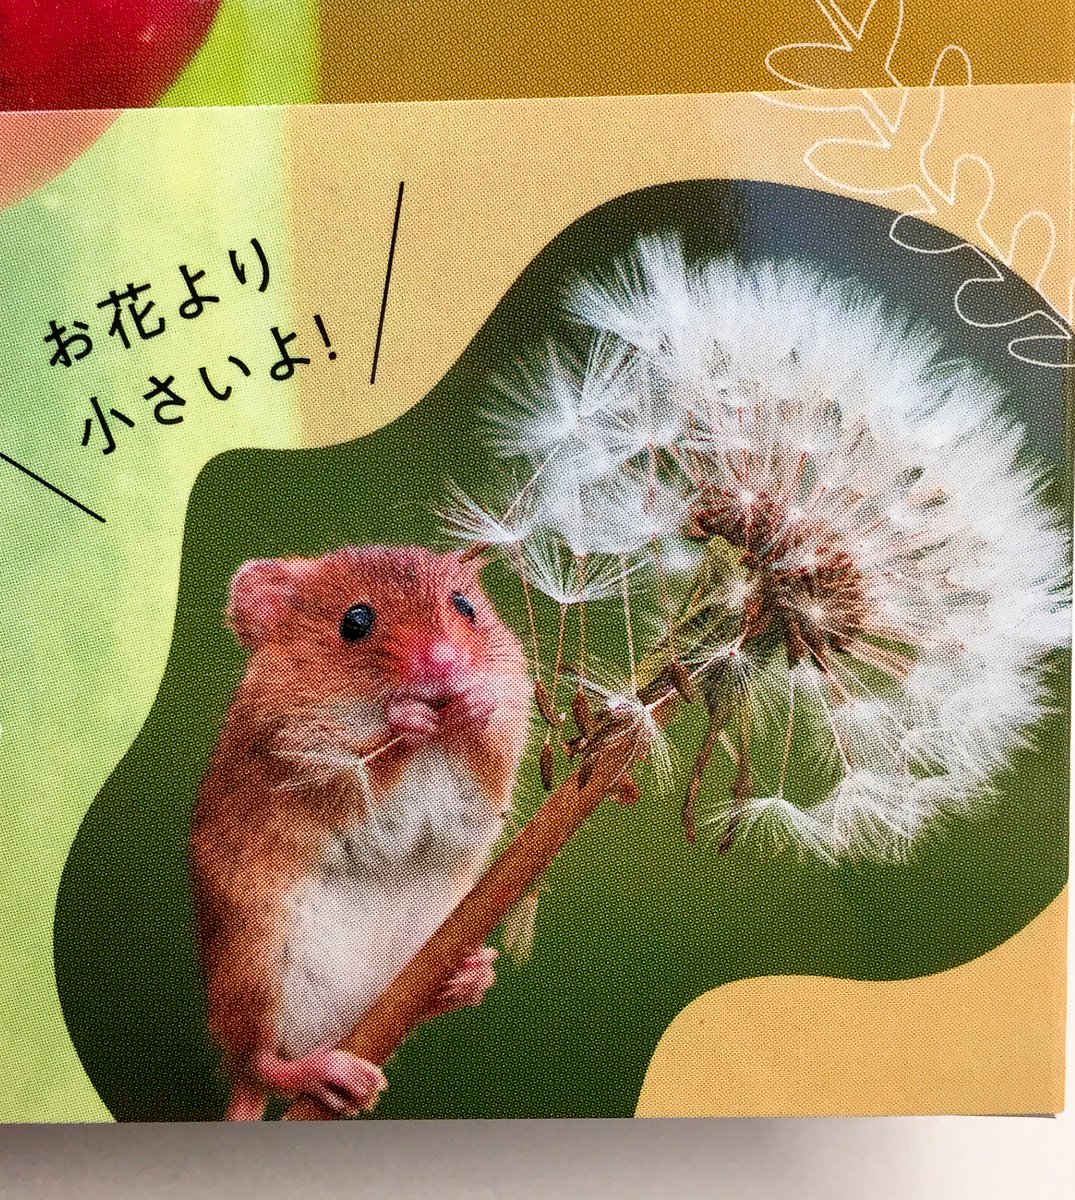 ジュンク堂書店 名古屋店 No Twitter 芸術書 ハーベストマウス ってご存知ですか 日本ではカヤネズミと呼ばれるとっても小さな彼らの写真集ができました ちいさなかわいいハーベストマウス Mdnコーポレーション 体長5 7cmのチューリップにだって埋もれ